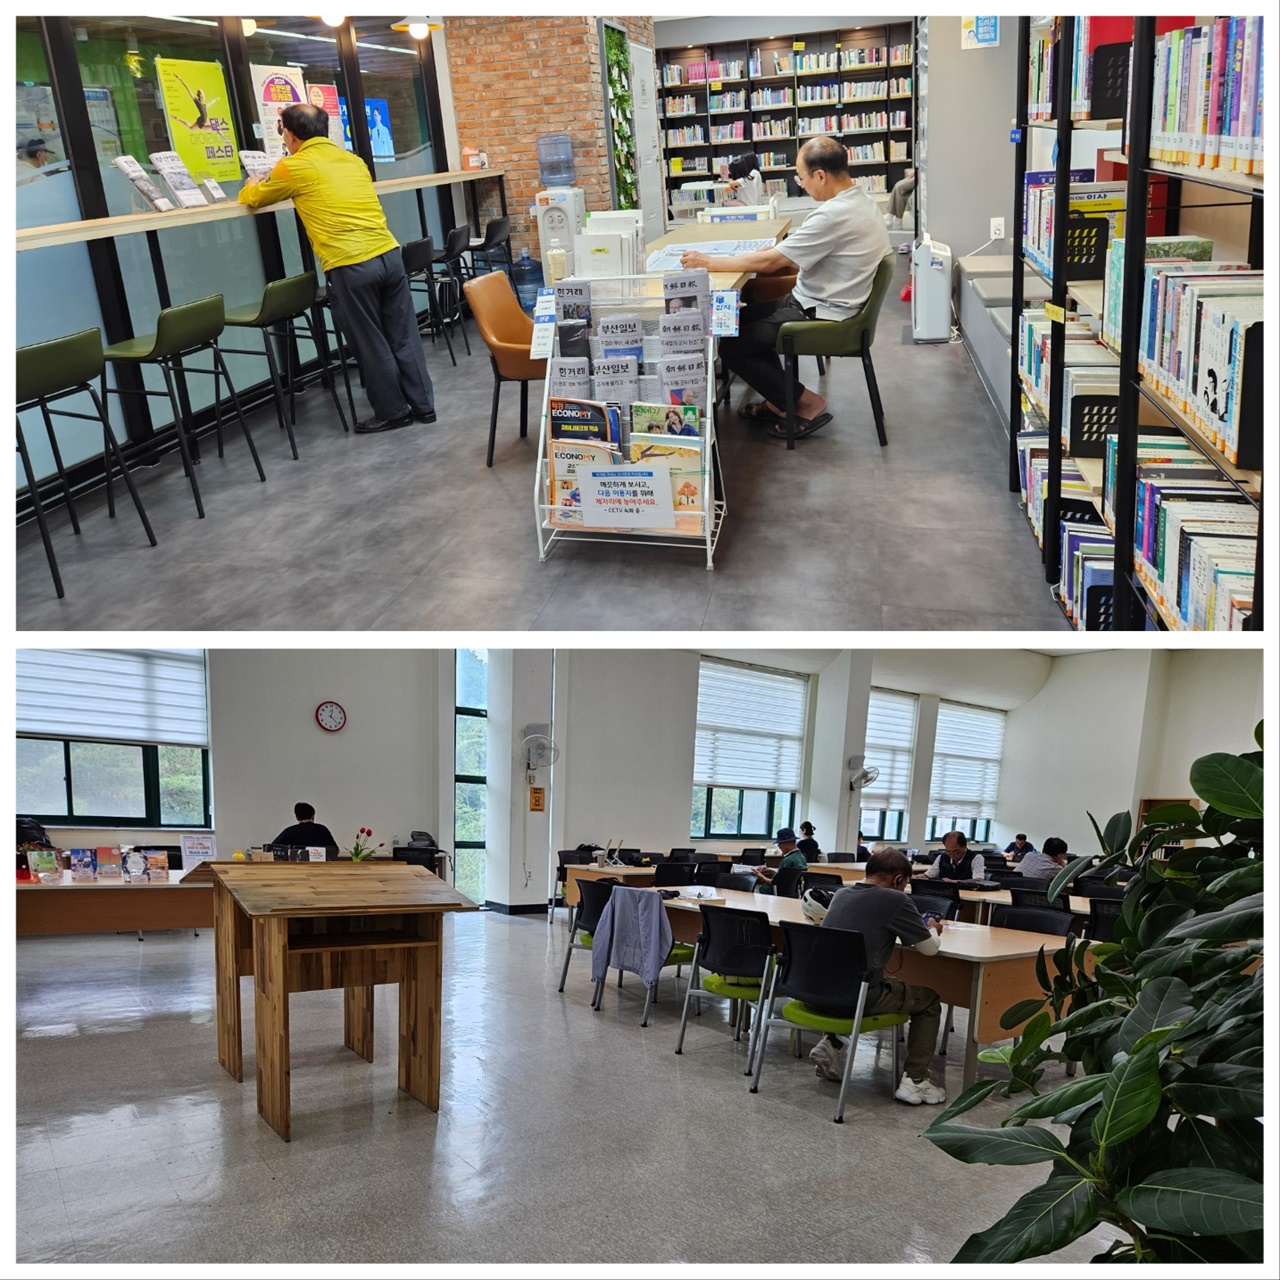 지하철역 내의 작은 도서관 모습(위), 우리 지역 공공 도서관의 종합자료실 모습(아래)